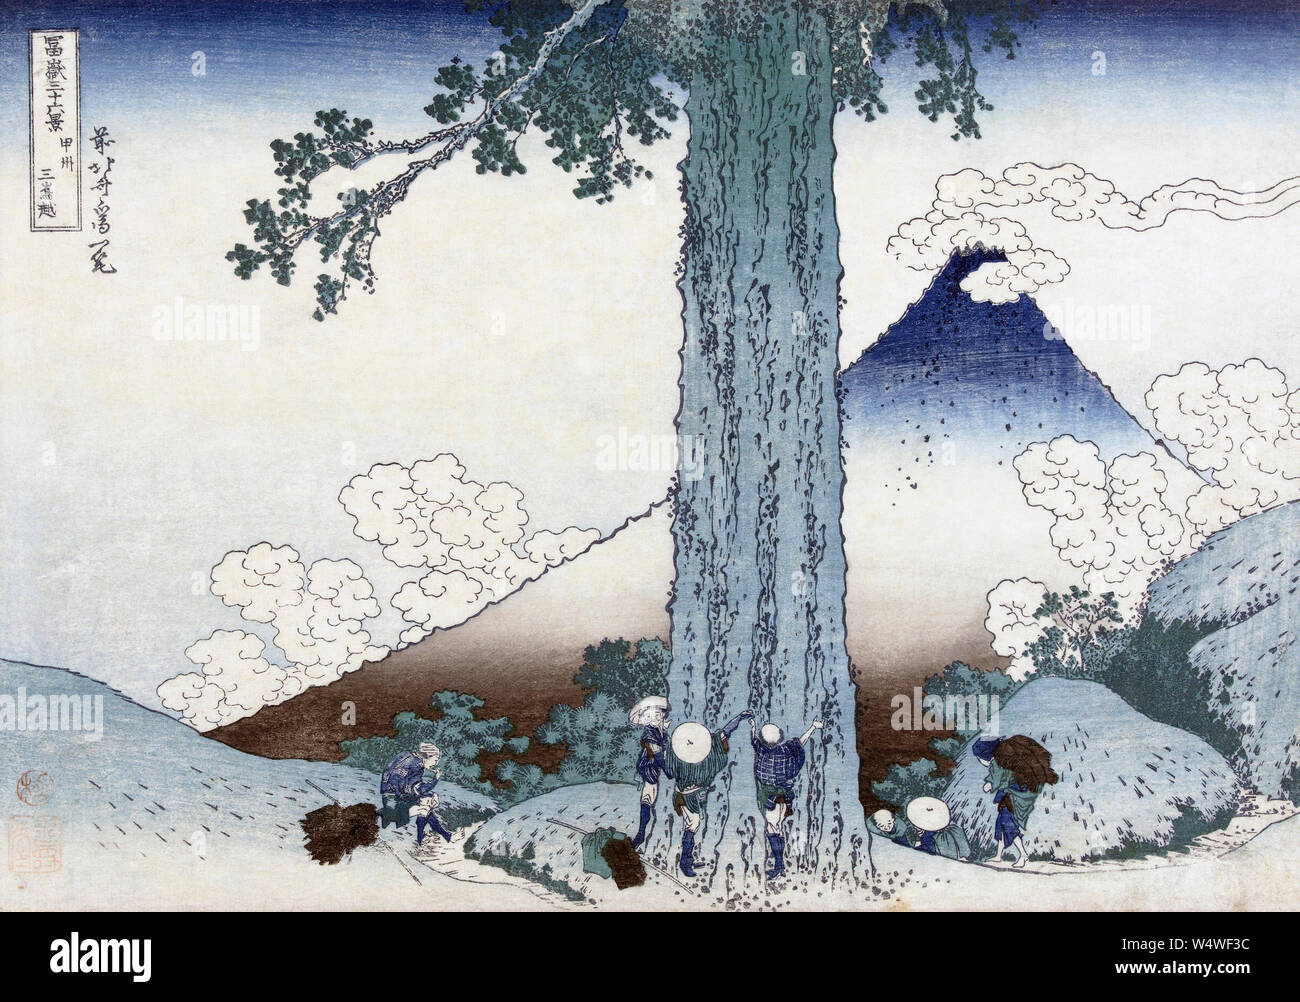 Col de montagne Mishima dans la province de Kai, Japon, montrant le Mt Fuji. Après une gravure sur bois datant de vers 1830 par l'artiste japonais Katsushika Hokusai, 1760 - 1849. La gravure sur bois fait partie d'une série connue sous le nom de trente-six vues du Mont Fuji. Banque D'Images